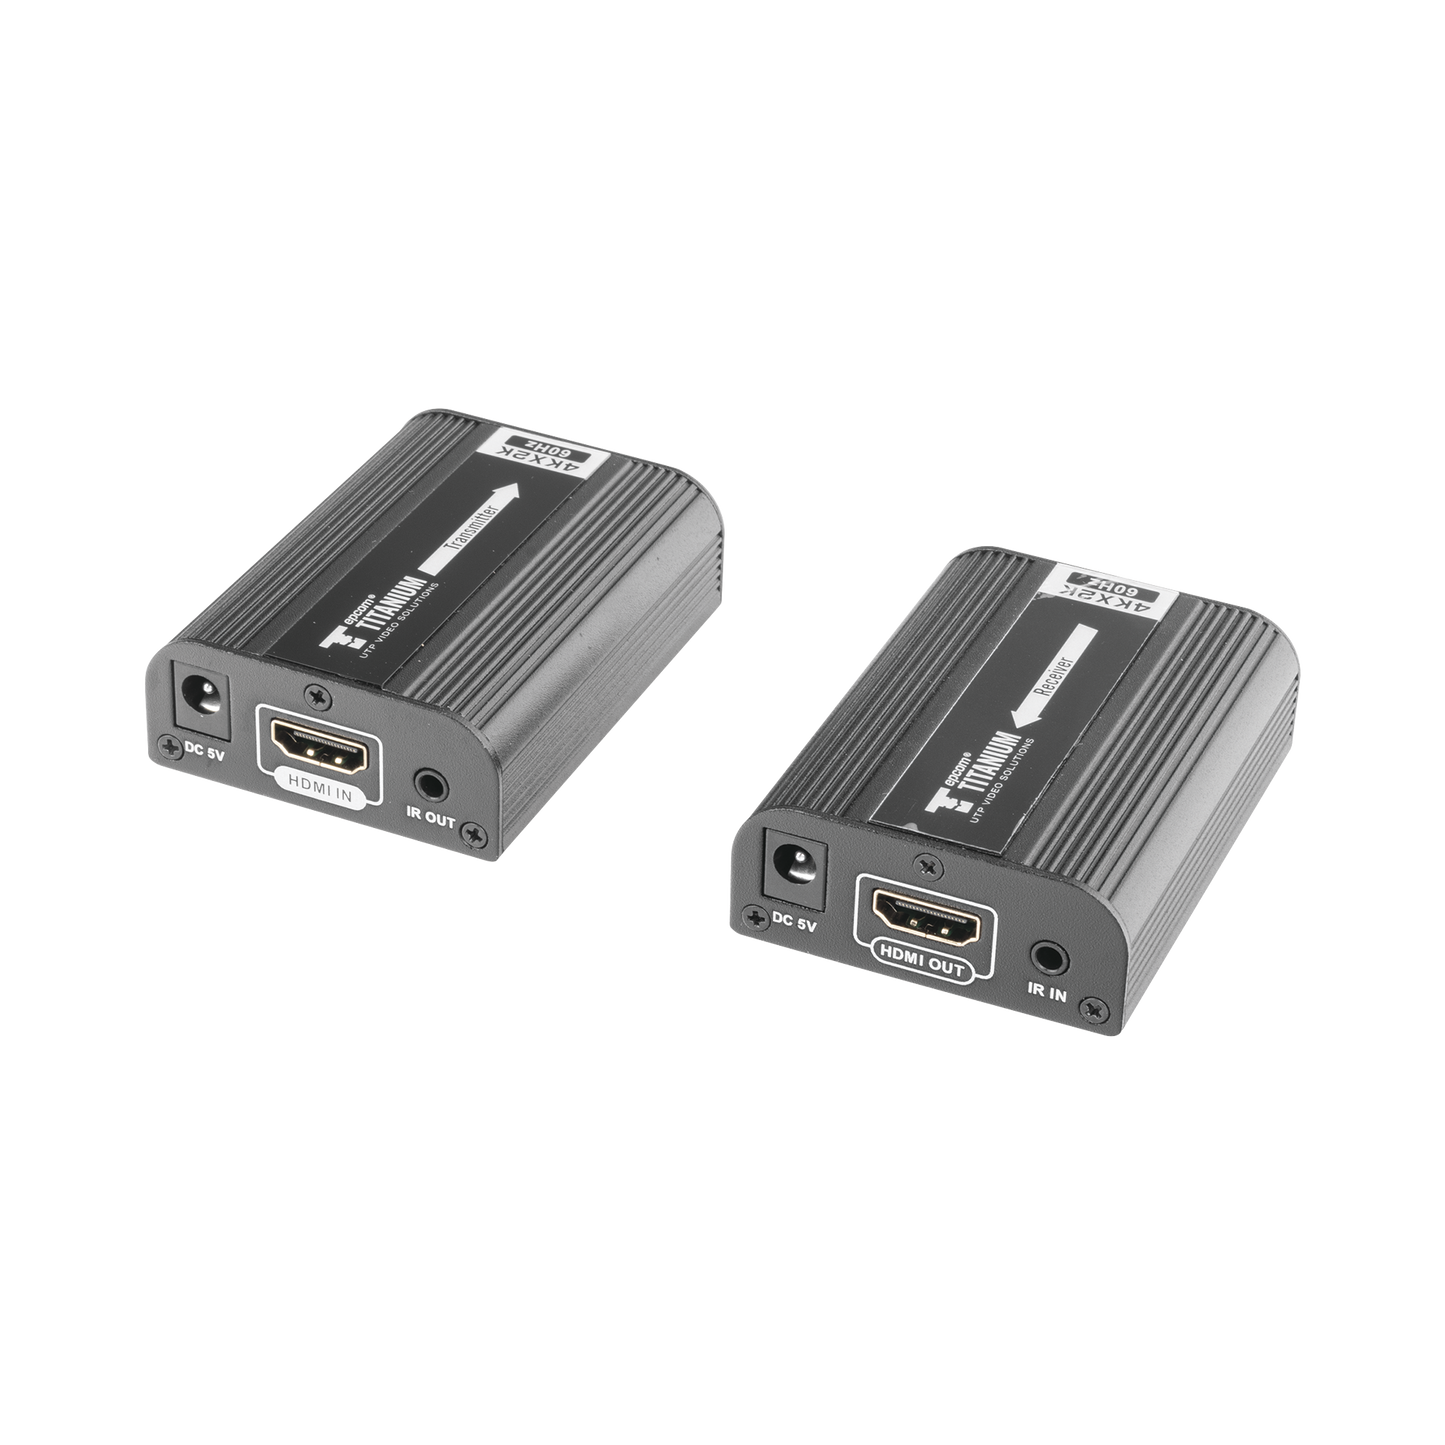 Kit Extensor HDMI para distancias de 30 metros / Resolución 4K x 2K@ 30 Hz/ Cat 6, 6a y 7 / HDCP2.2 / HDMI 2.0  / Soporta PCM, HDbitT / Soporta control remoto del equipo fuente.